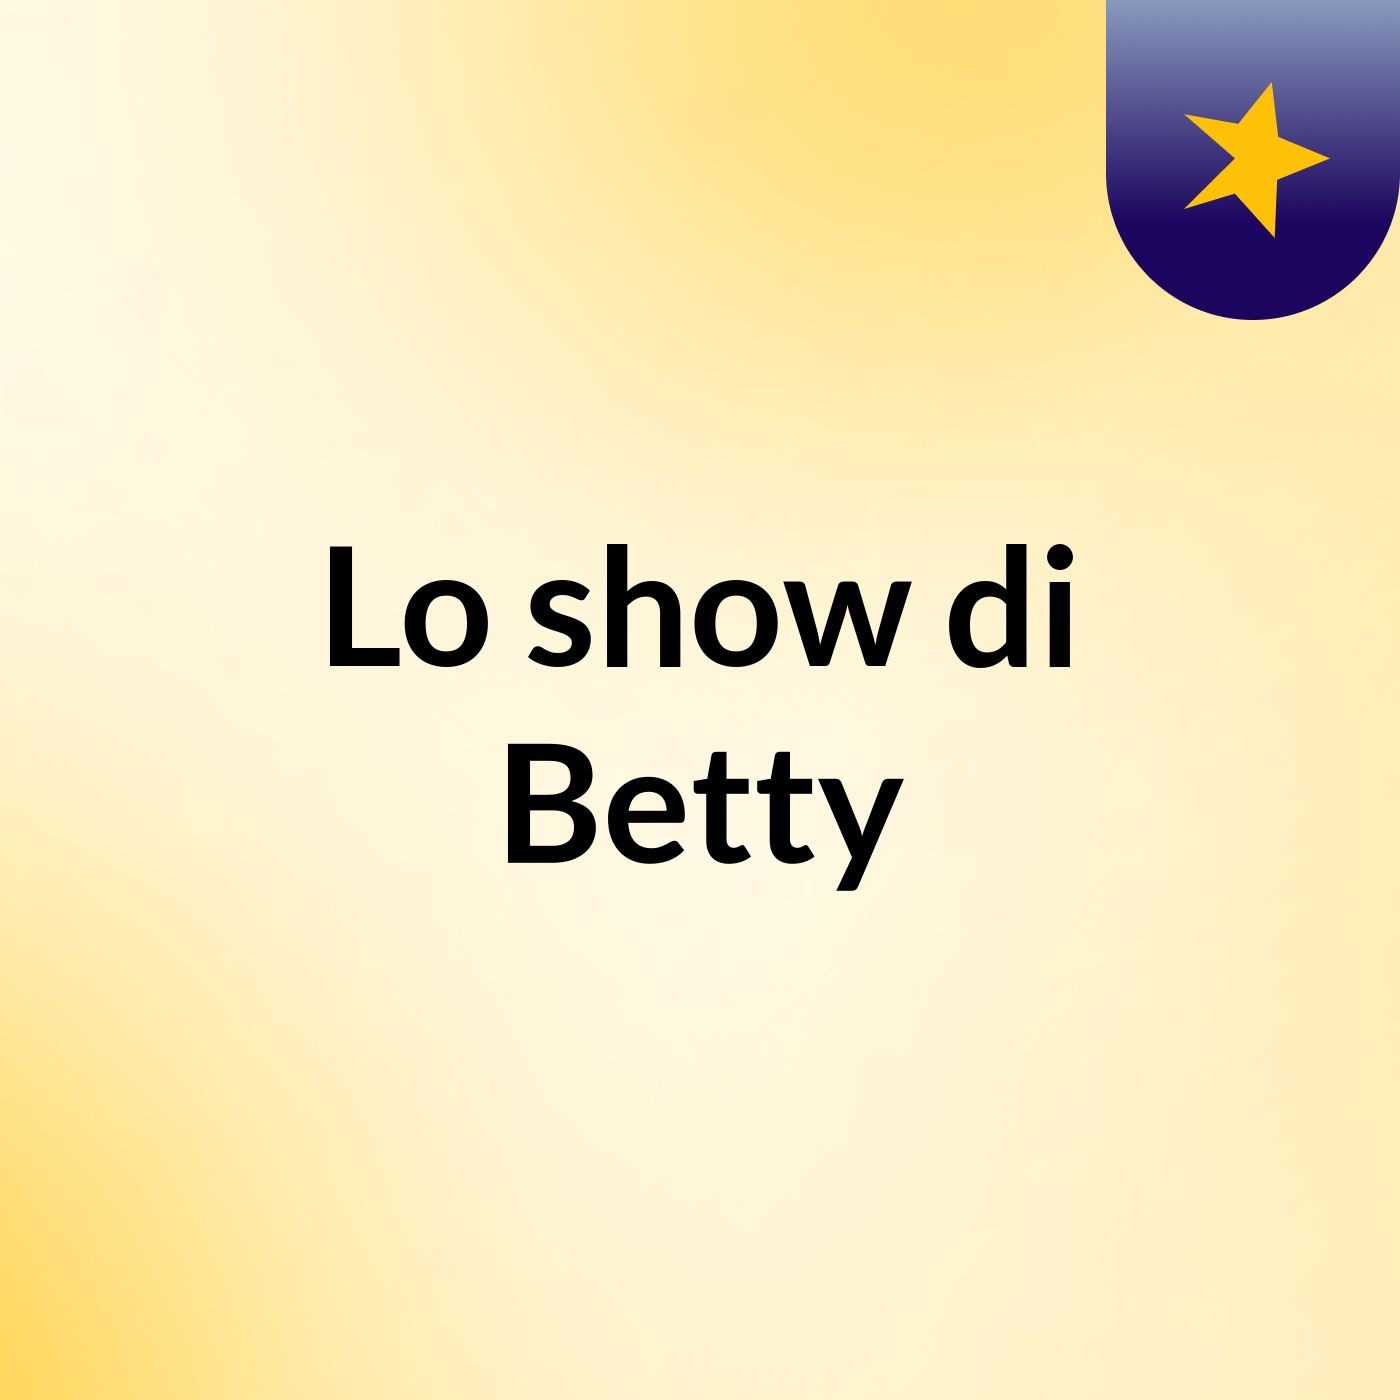 Lo show di Betty